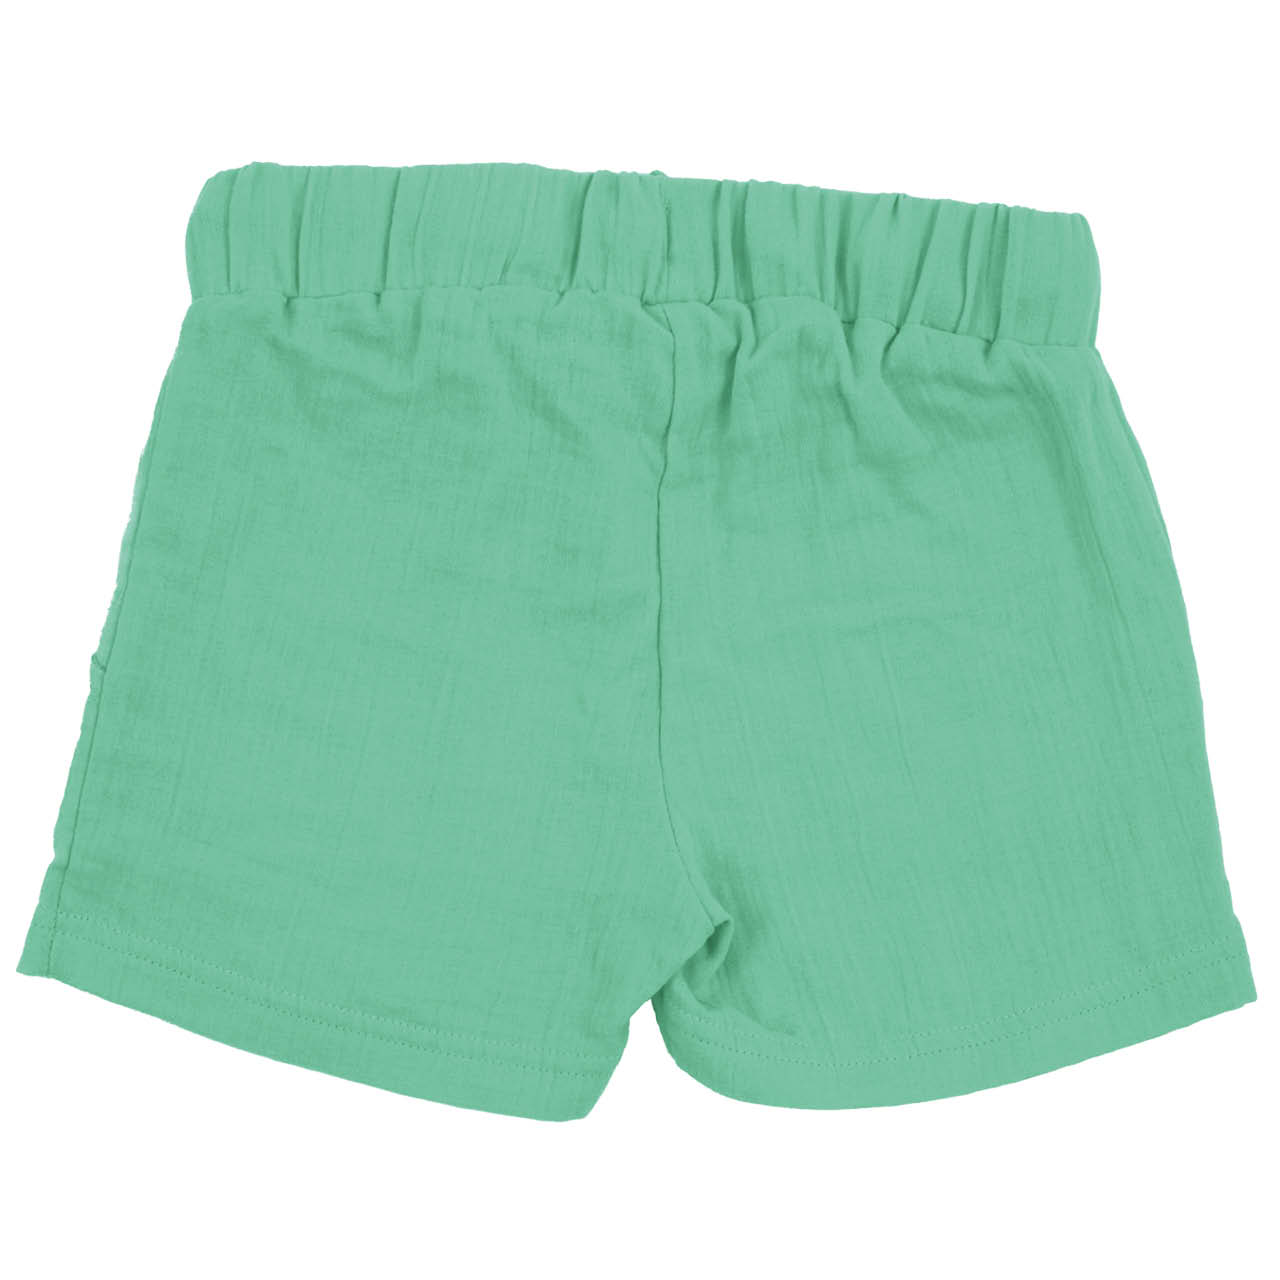 Kurze Musselin Shorts grün